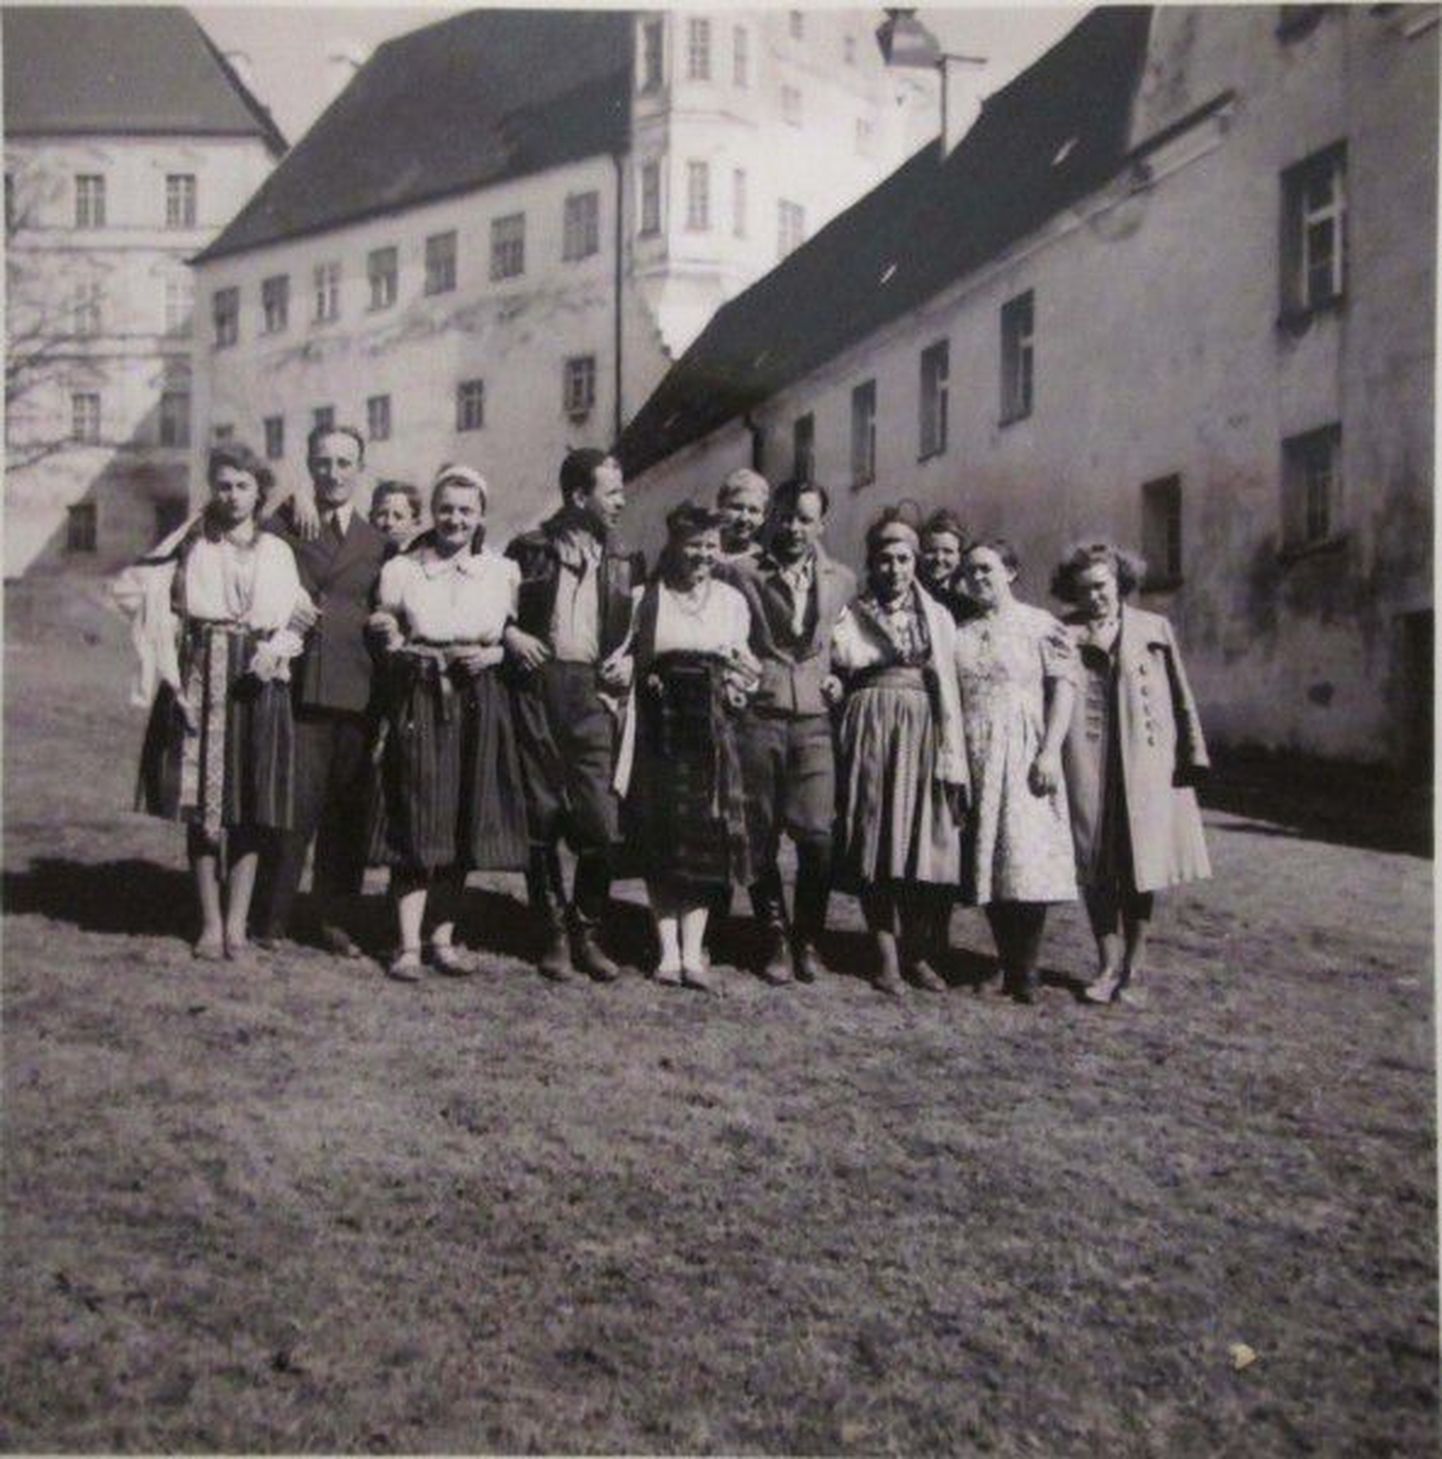 Järelümberasujad tähistavad laagrisse saabumise esimest aastapäeva Schwäbisch Hallis Lõuna-Saksamaal, 8. märts 1942. Foto: erakogu
Järelümberasujad tähistavad laagrisse saabumise esimest aastapäeva Schwäbisch Hallis Lõuna-Saksamaal, 8. märts 1942.